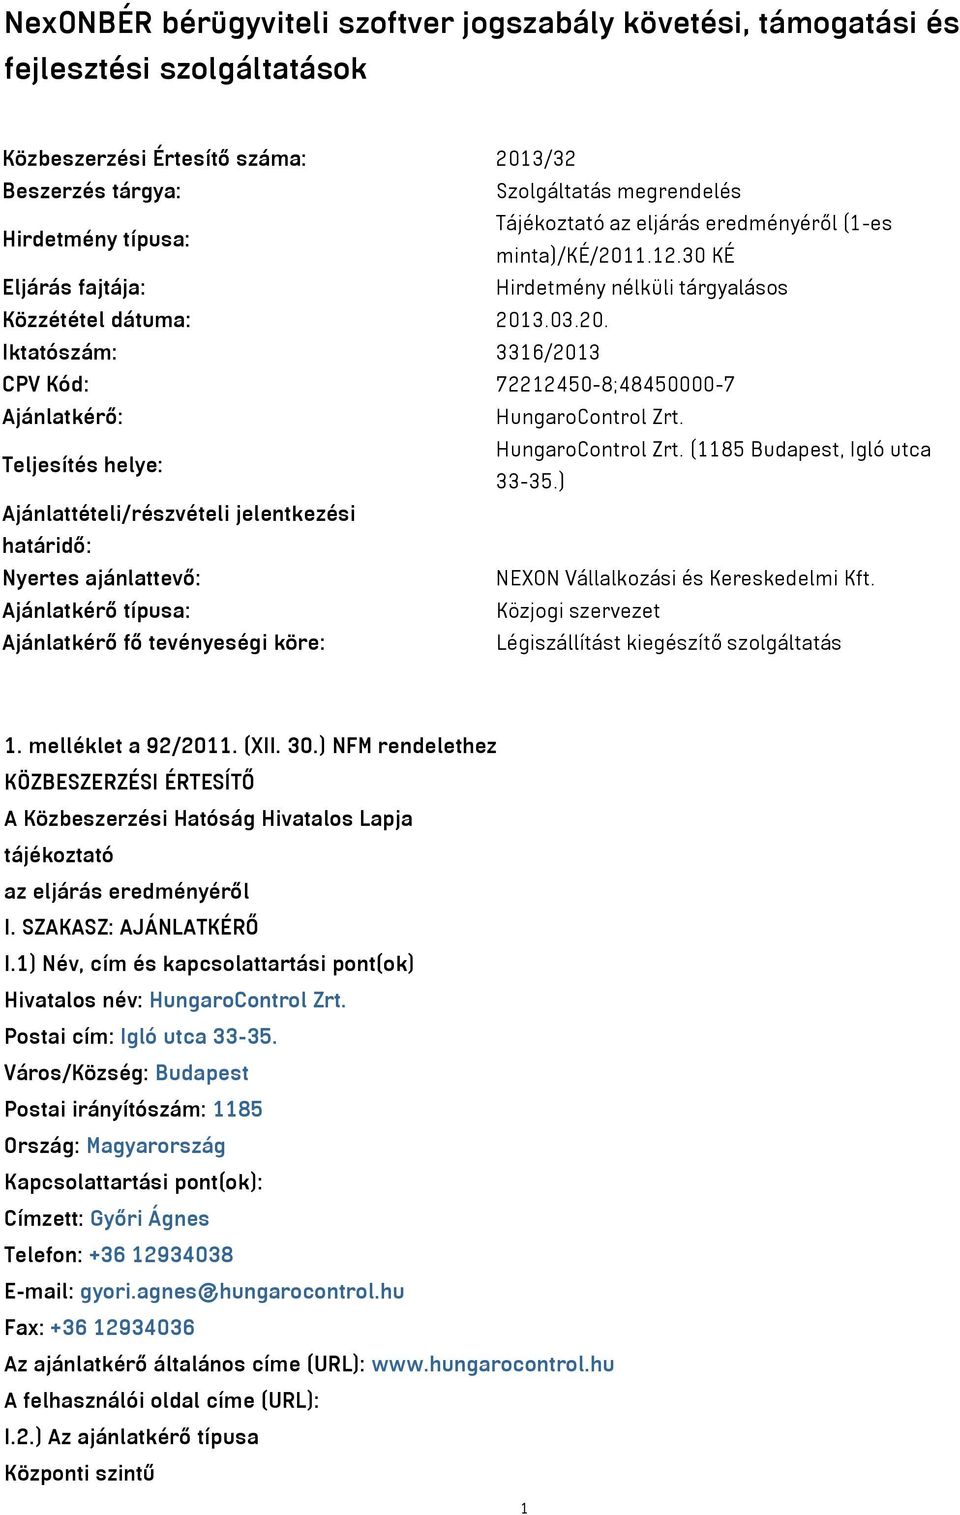 Teljesítés helye: HungaroControl Zrt. (1185 Budapest, Igló utca 33-35.) Ajánlattételi/részvételi jelentkezési határidő: Nyertes ajánlattevő: NEXON Vállalkozási és Kereskedelmi Kft.